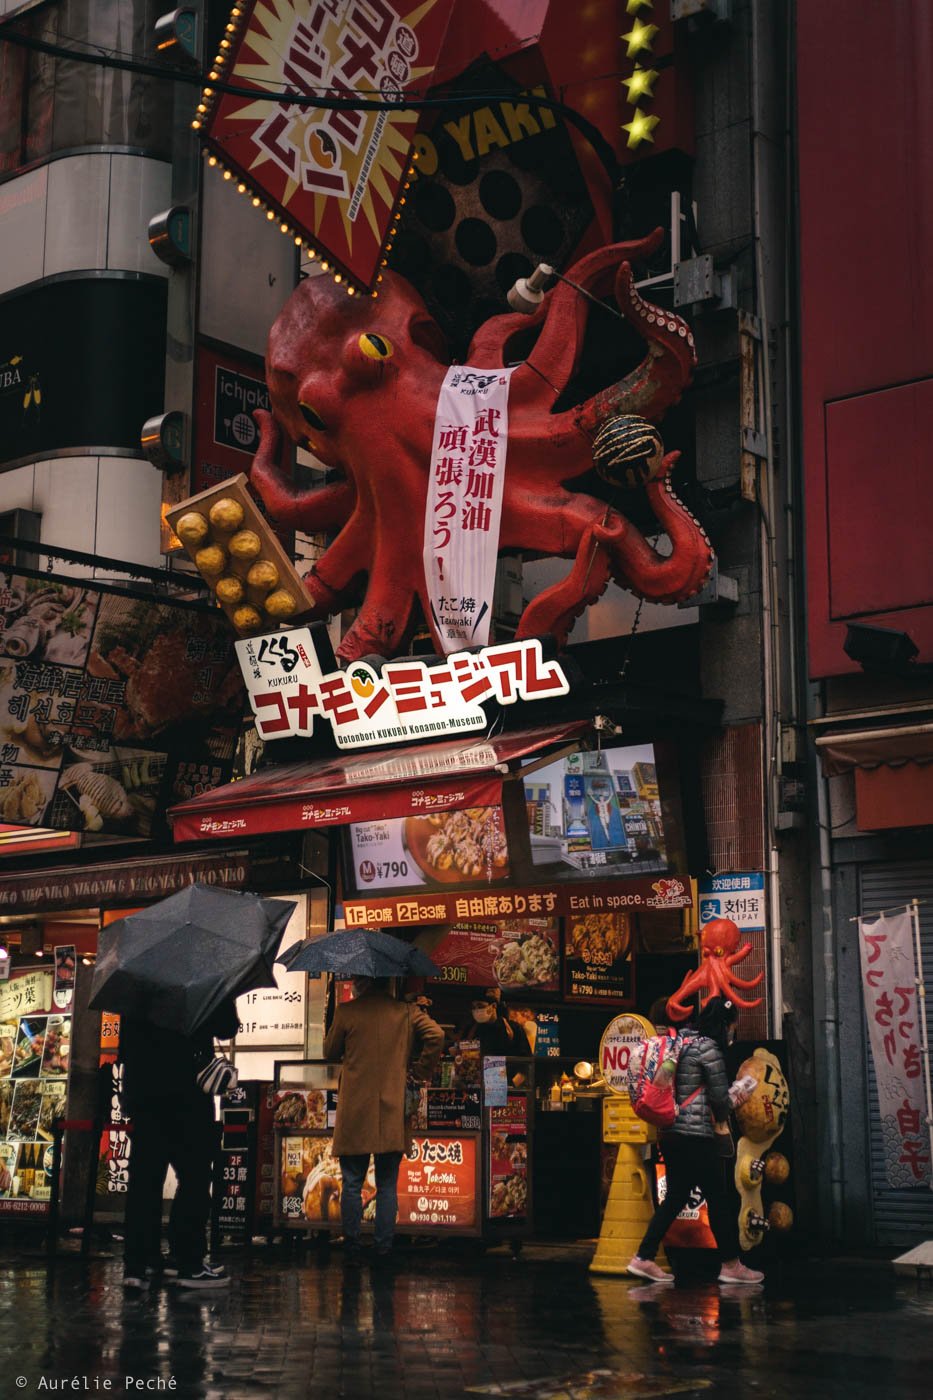 Enseignes dans le quartier de Dotonbori à Osaka représentant un poulpe géant.